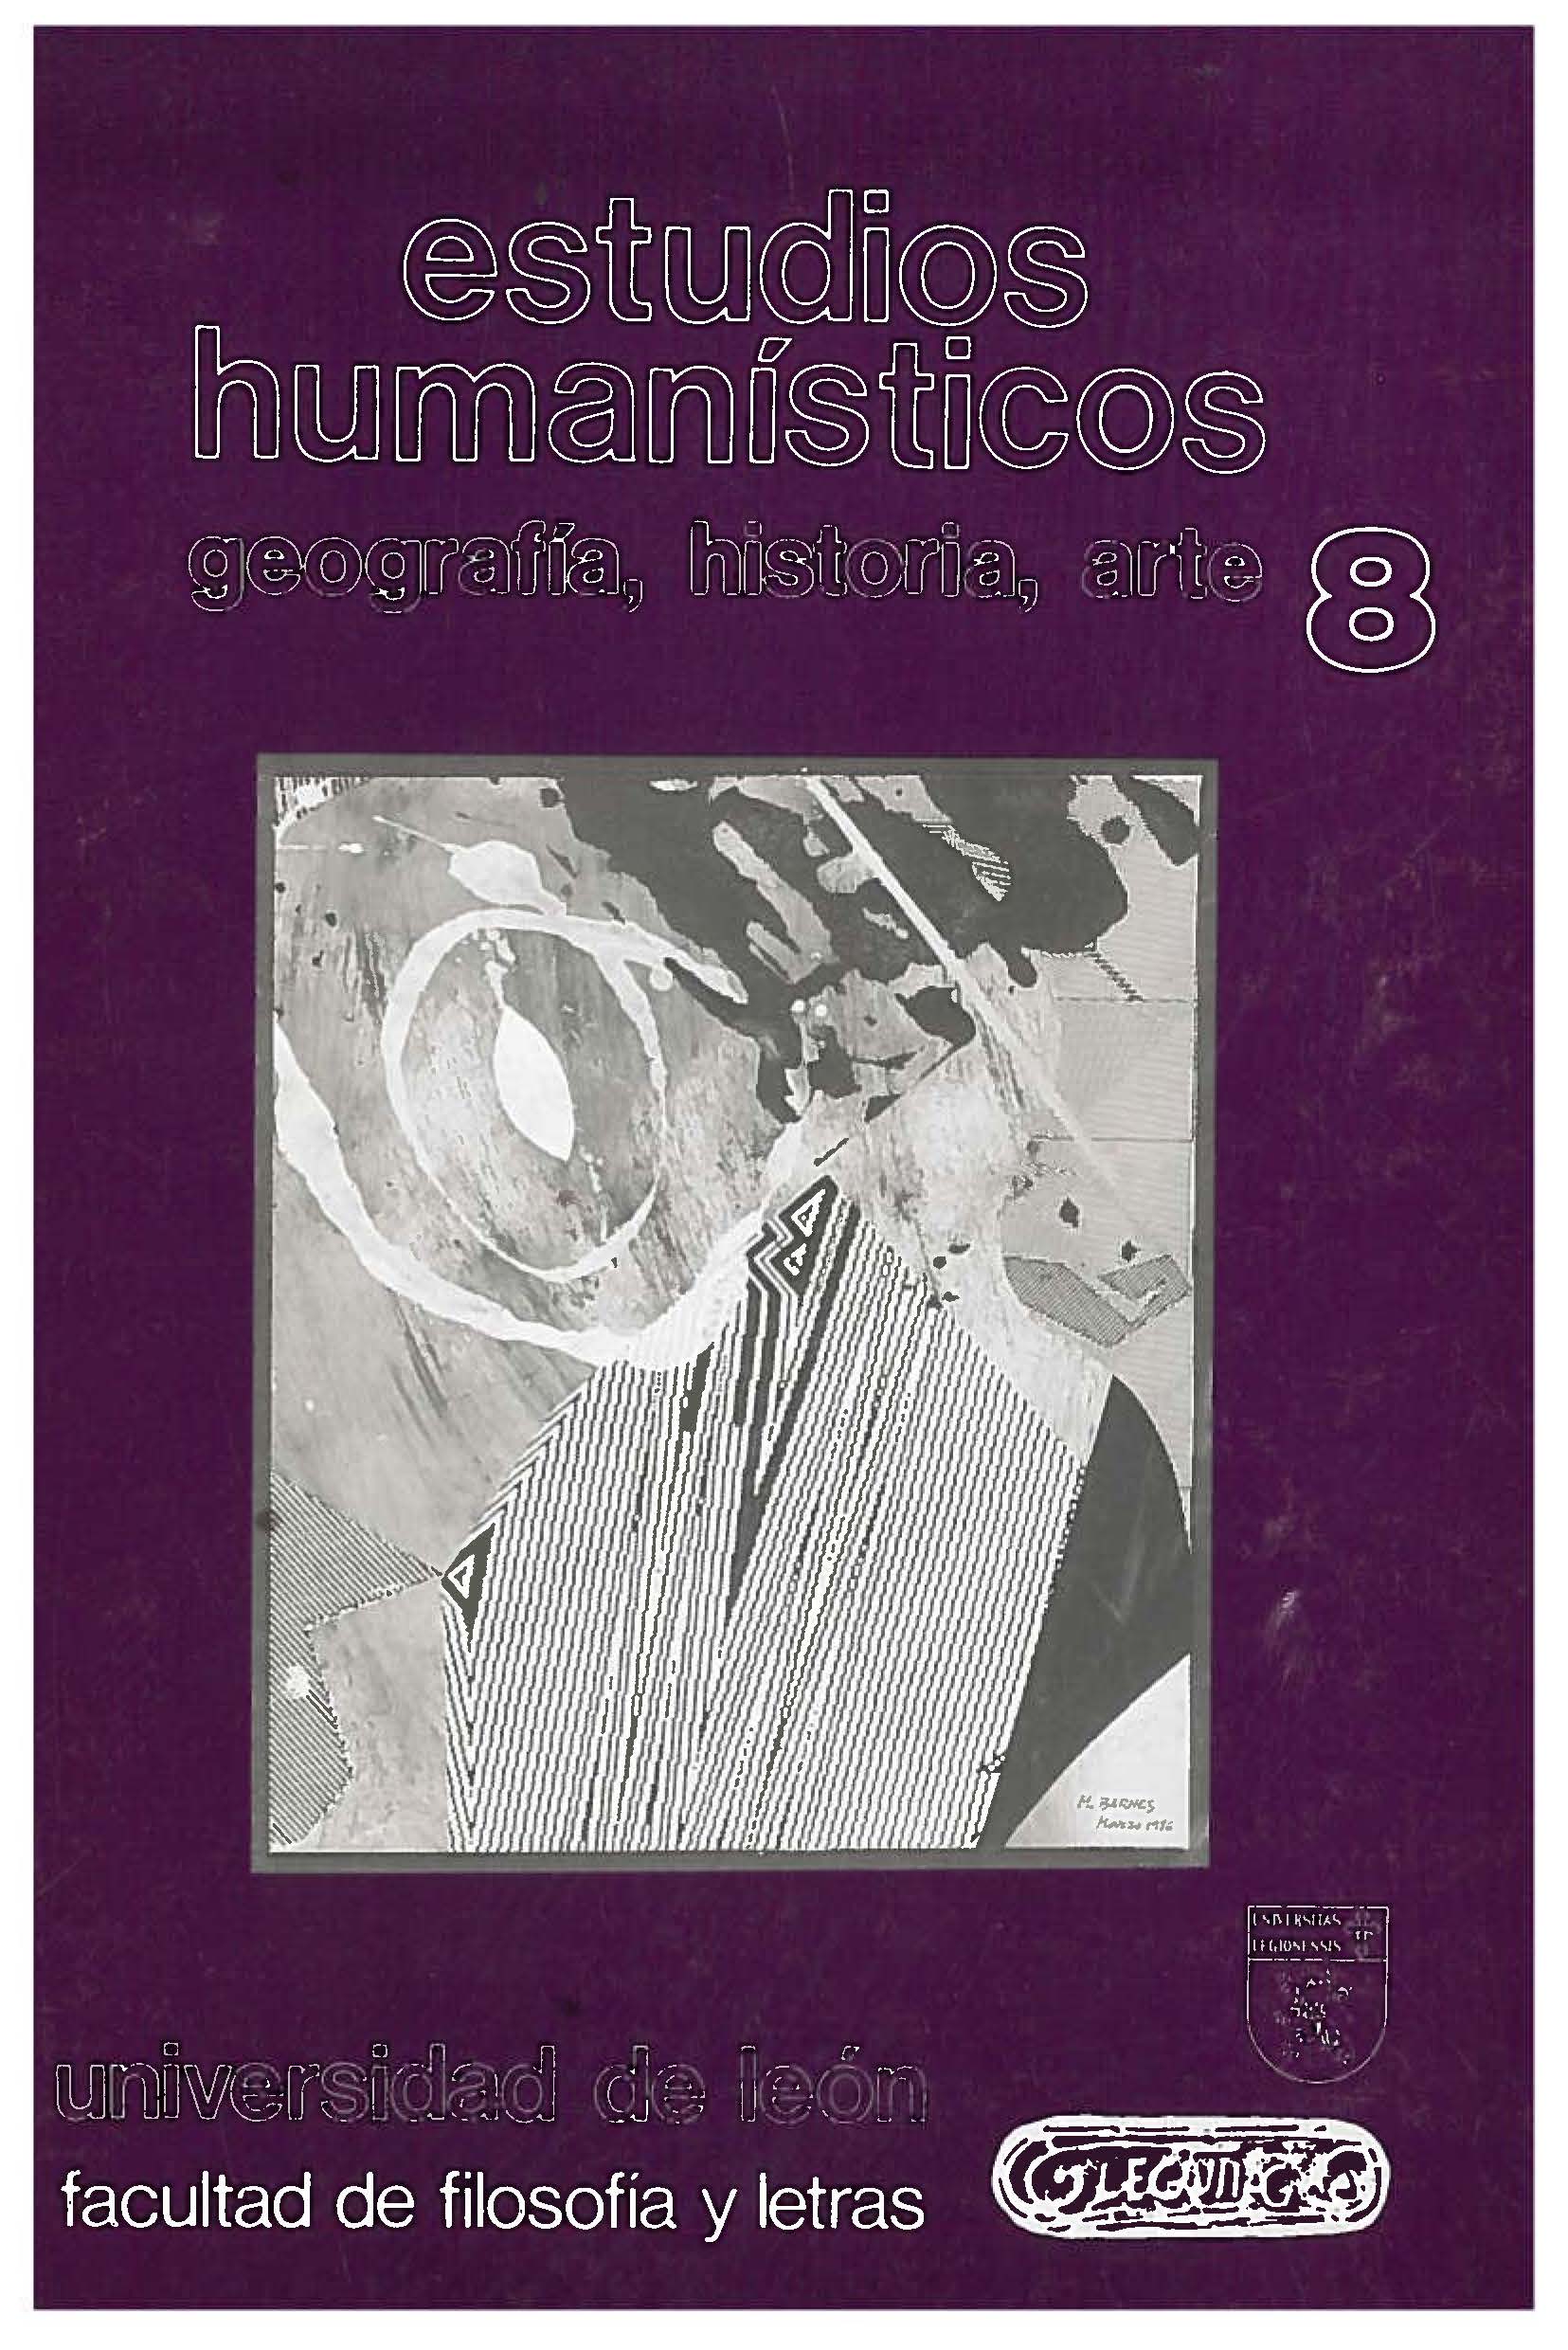 					Visualizar n. 8 (1986)
				